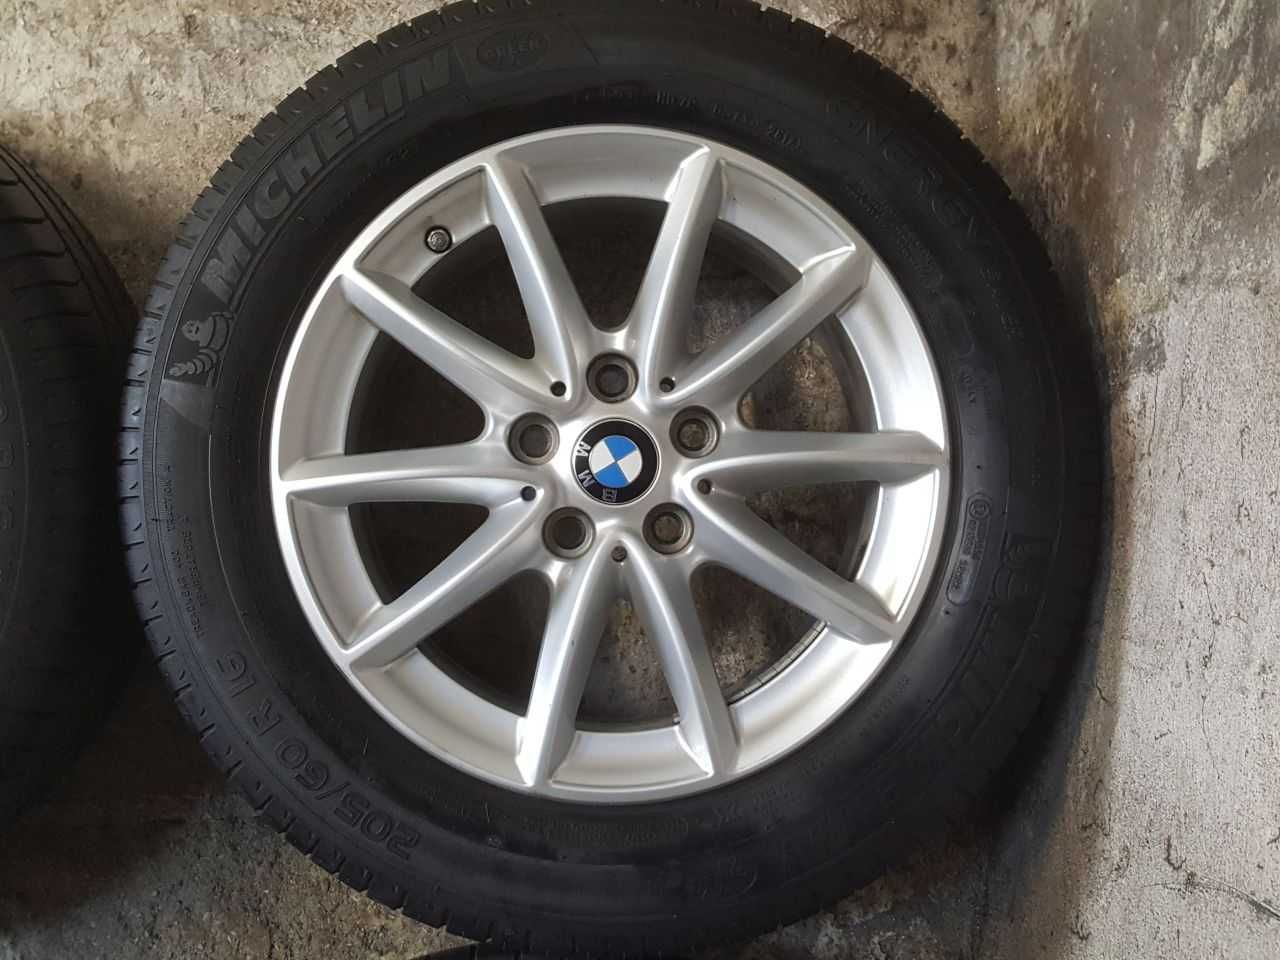 Felgi alu BMW VW Skoda R16 5x112 opony letnie 205/60R16 6,3mm Michelin